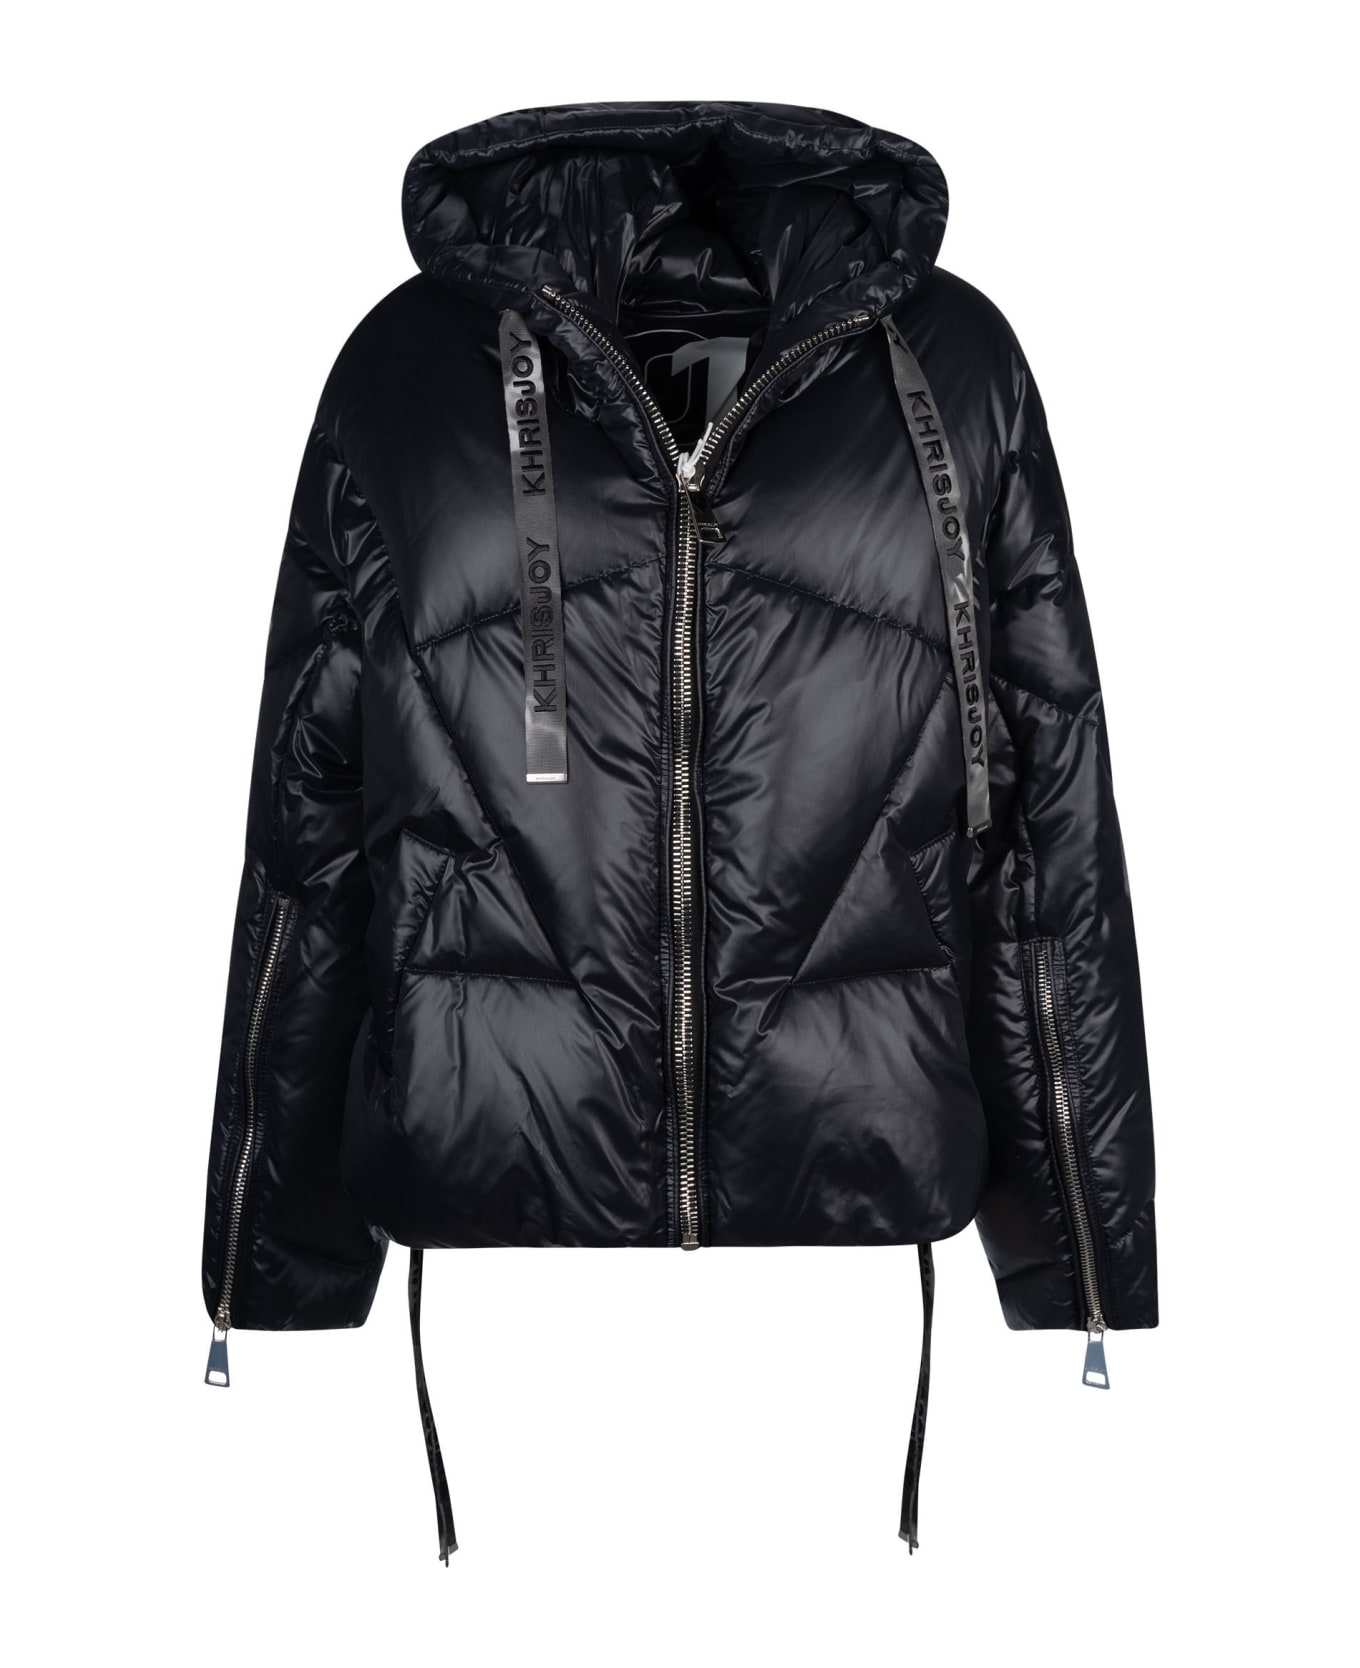 Khrisjoy Iconic Shiny Puffer Jacket - Black